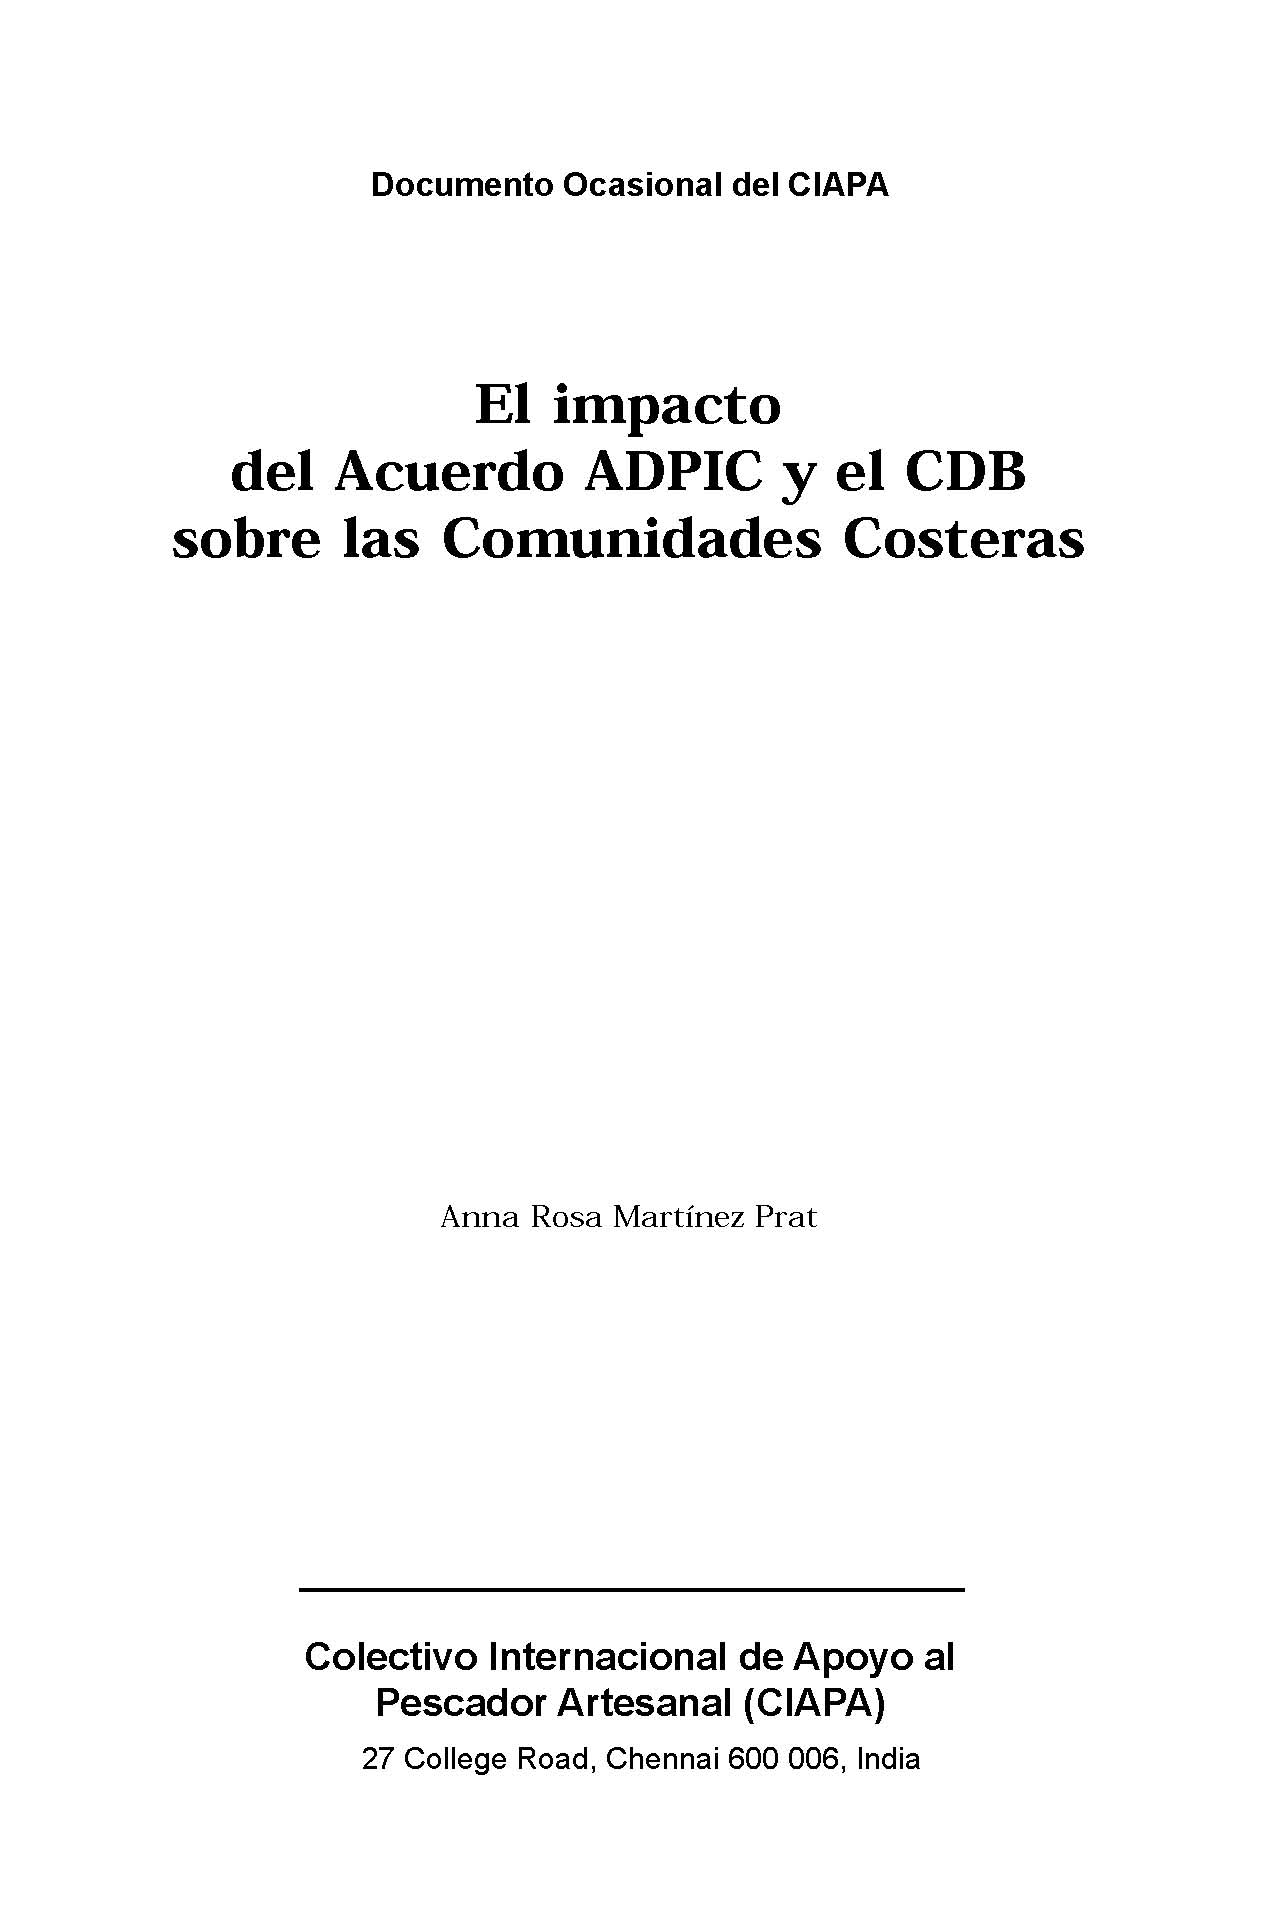 El impacto del Acuerdo ADPIC y el CDB sobre las Communidades Costeras